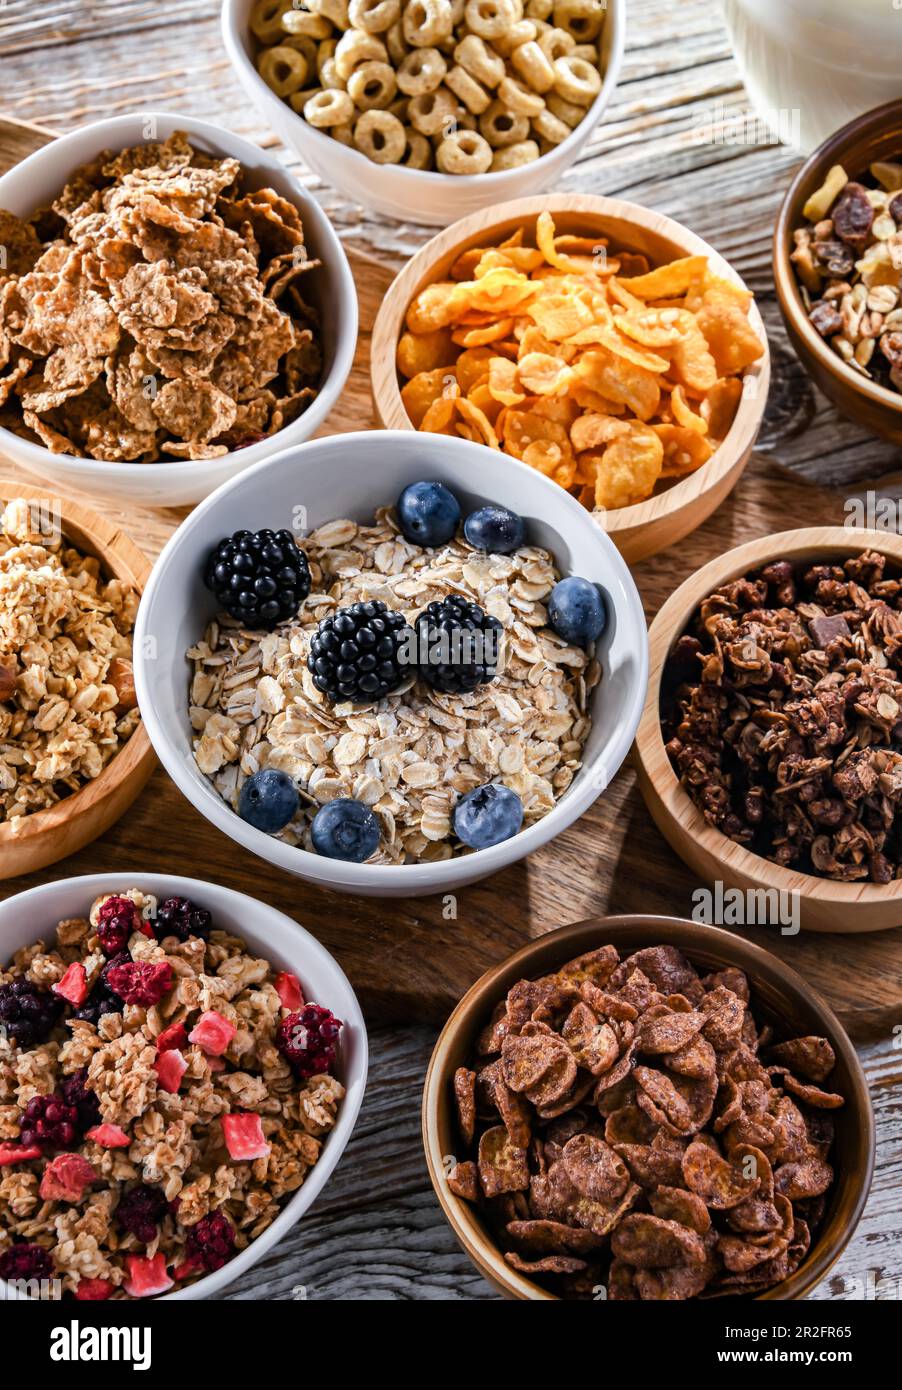 La composition avec différentes sortes de produits de céréales de petit déjeuner Banque D'Images